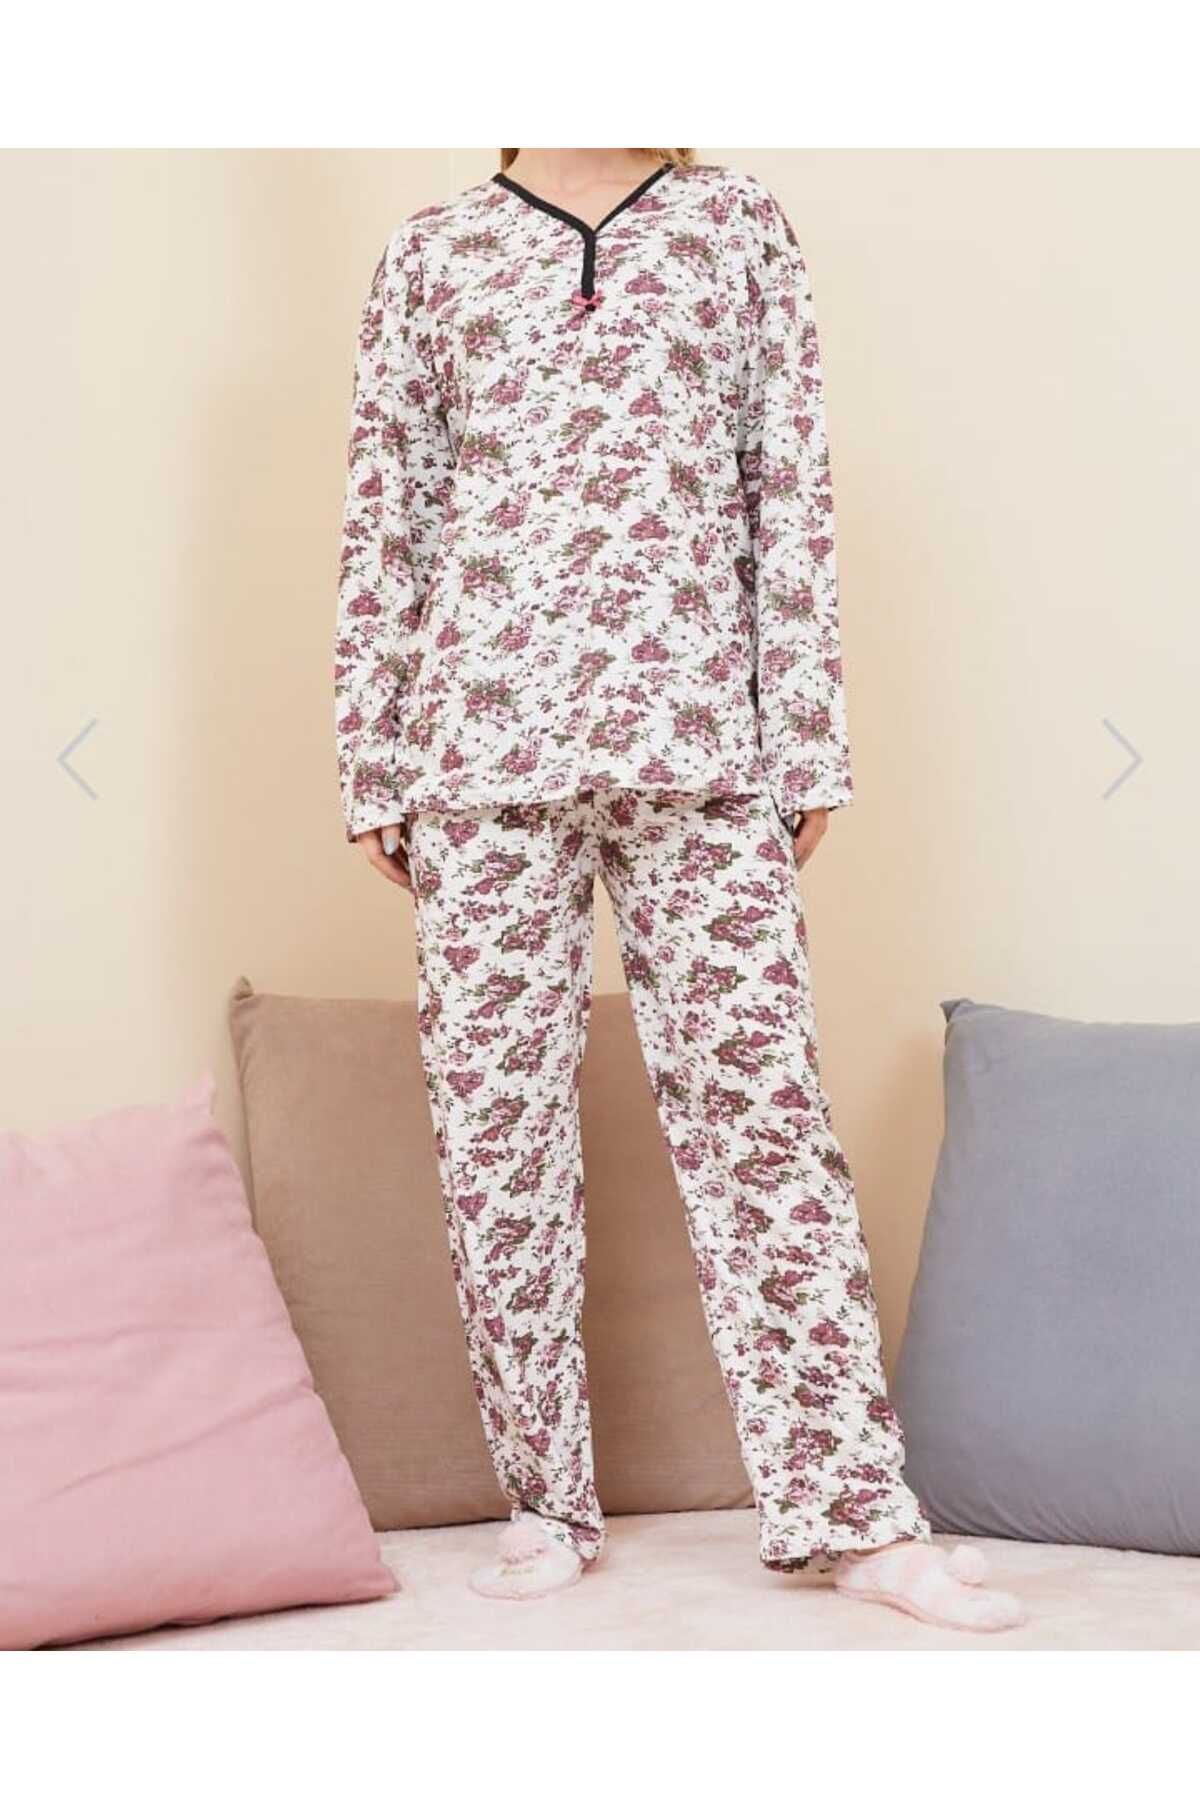 BULUT kadın pijama takımı